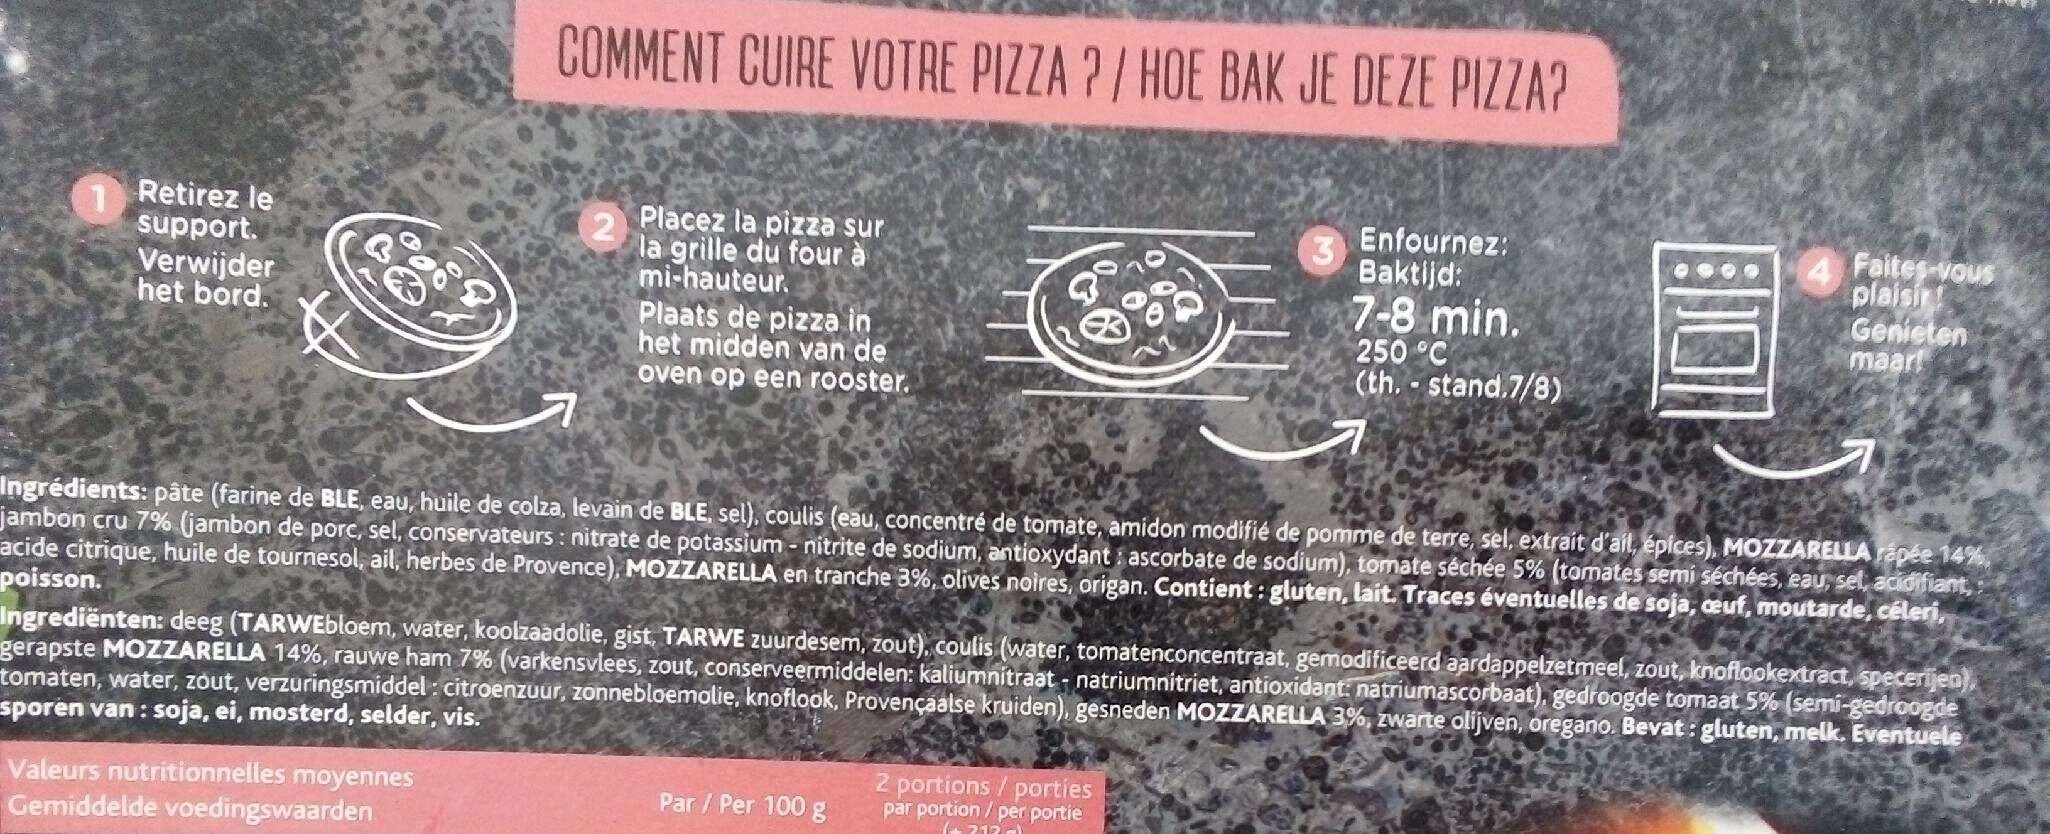 Pizza jambon cru - Ingrediënten - fr